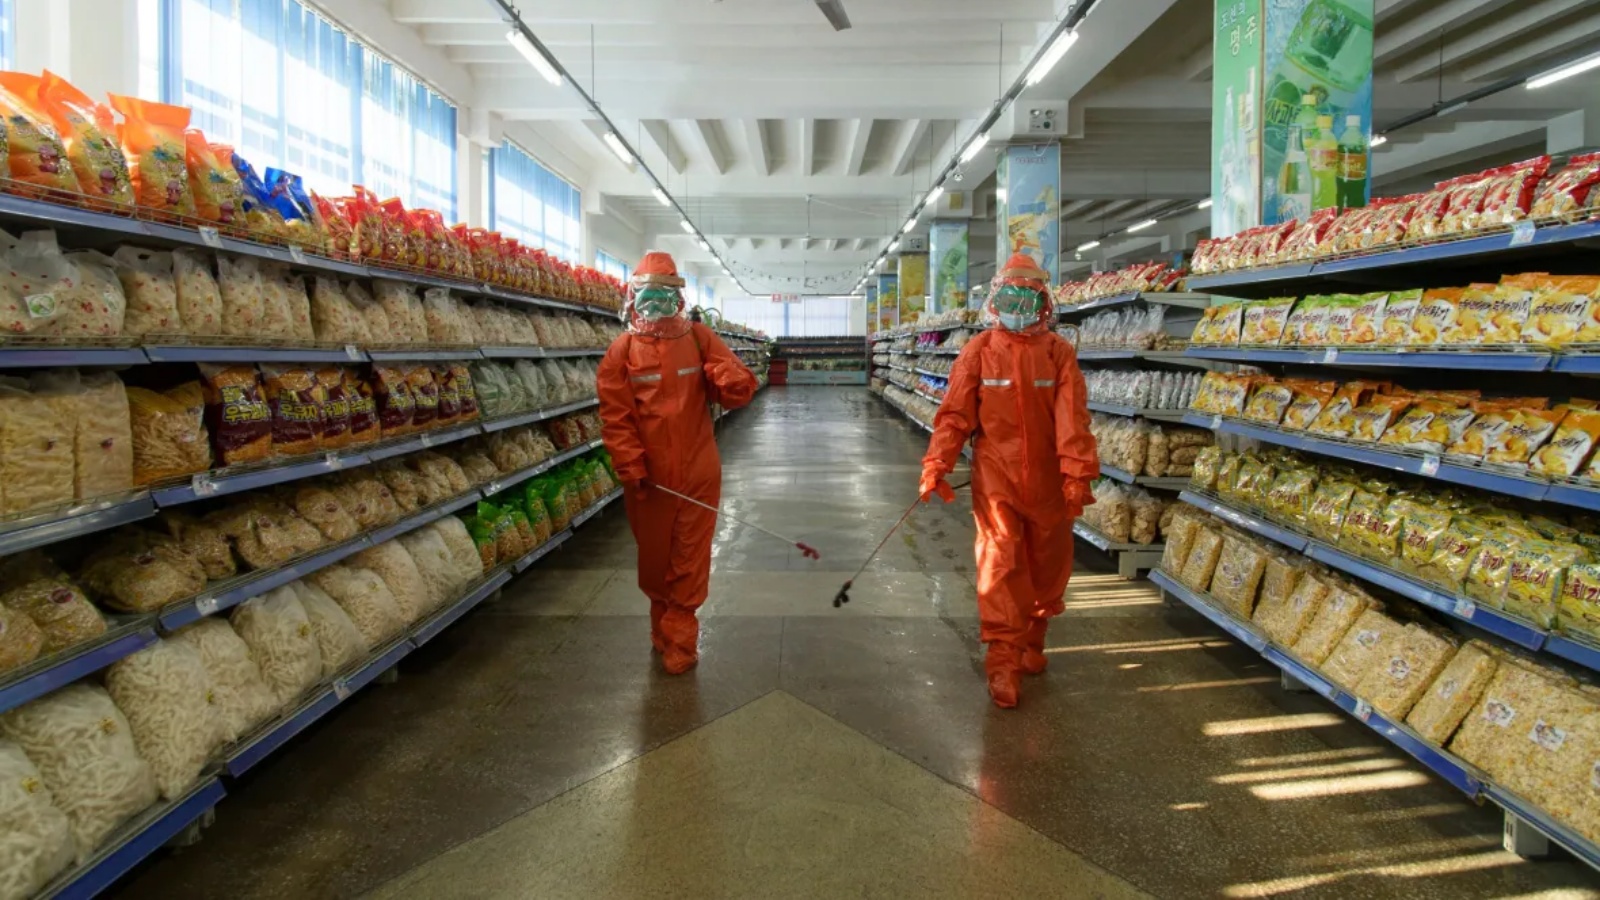 عاملا صحة يقومان بتعقيم الرفوف والأرضيات في متجر لبيع المواد الغذائية في بيونغ يانغ